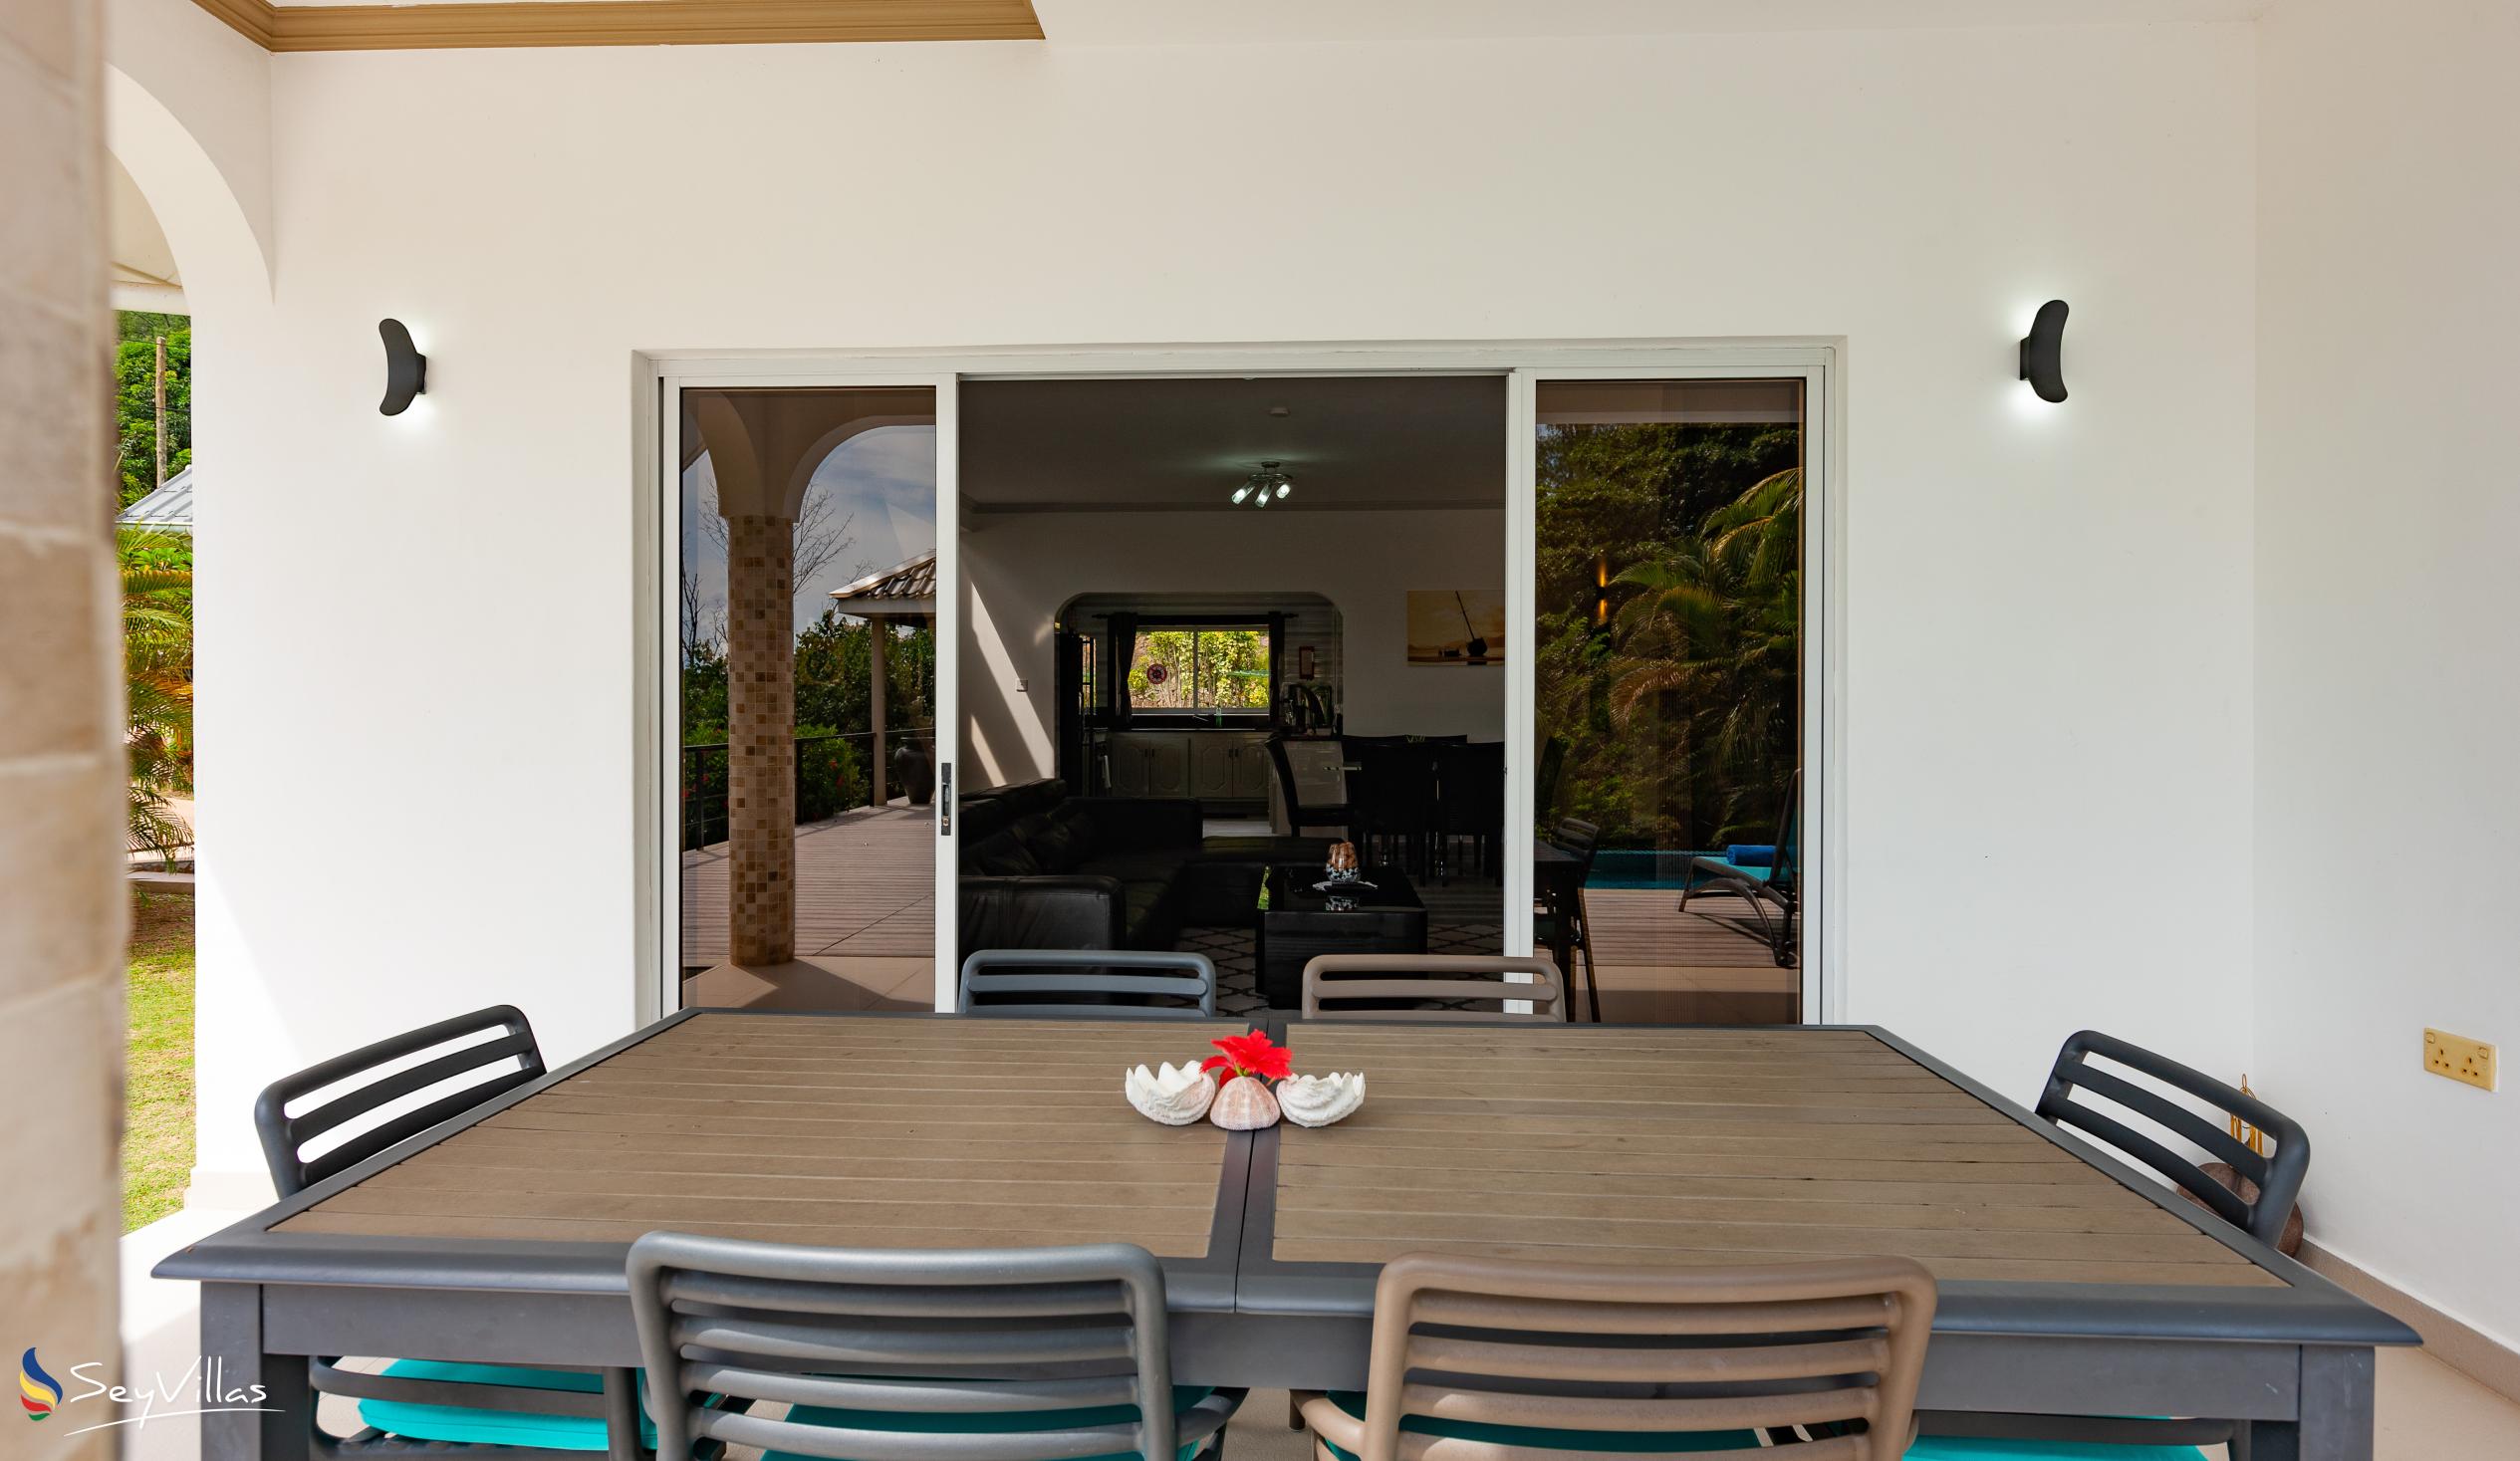 Foto 36: Tranquility Villa - Aussenbereich - Praslin (Seychellen)